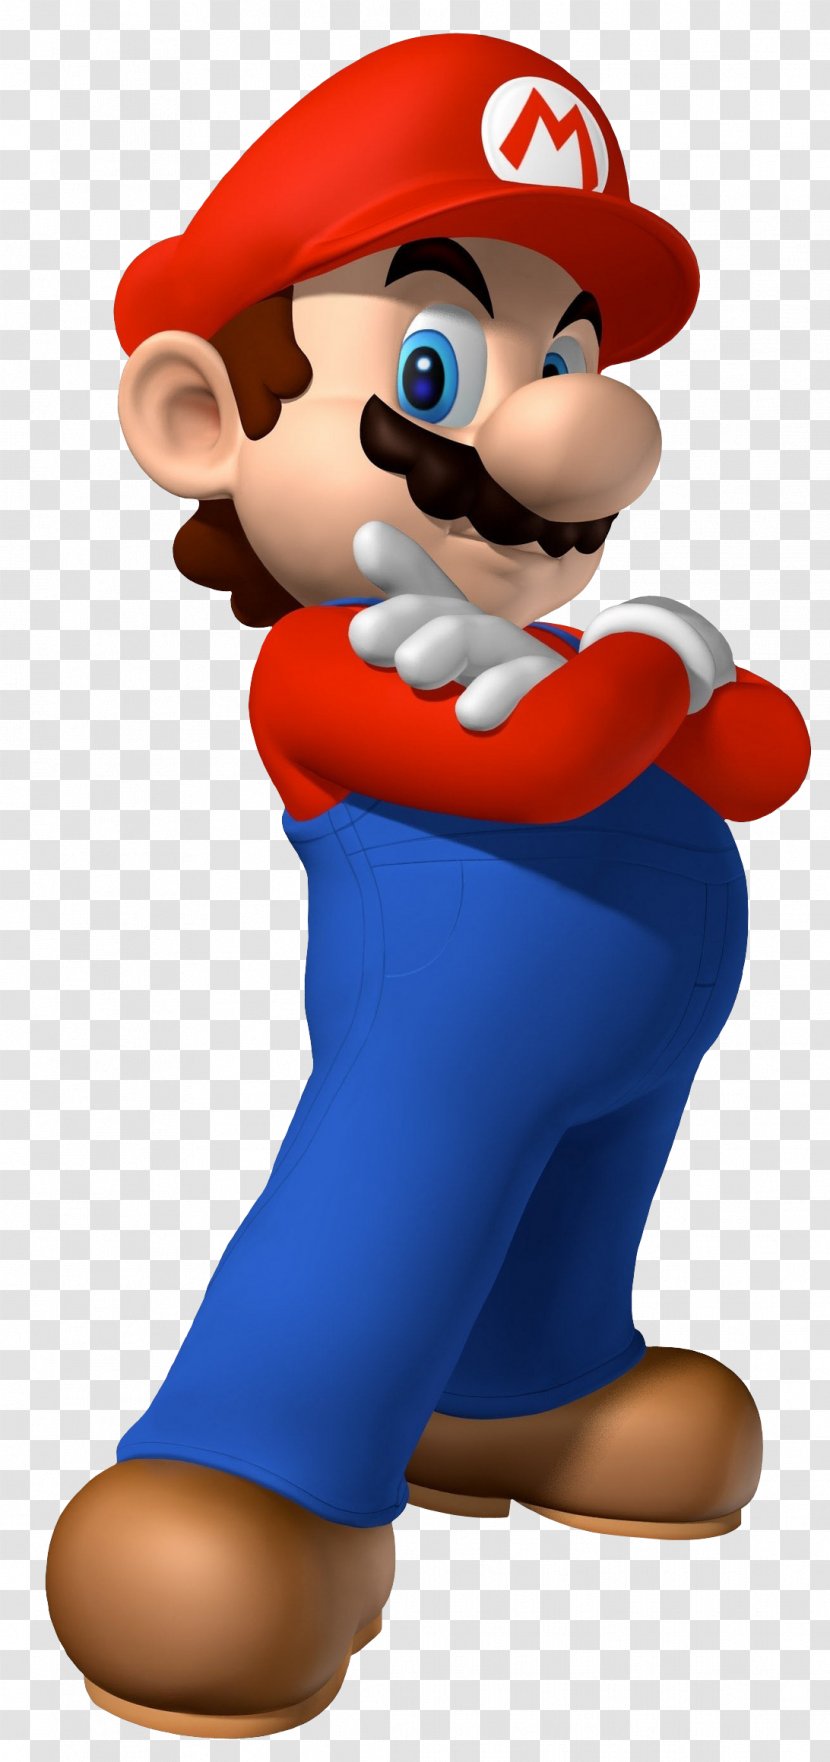 Super Mario Bros. Luigi Wii - Series Transparent PNG